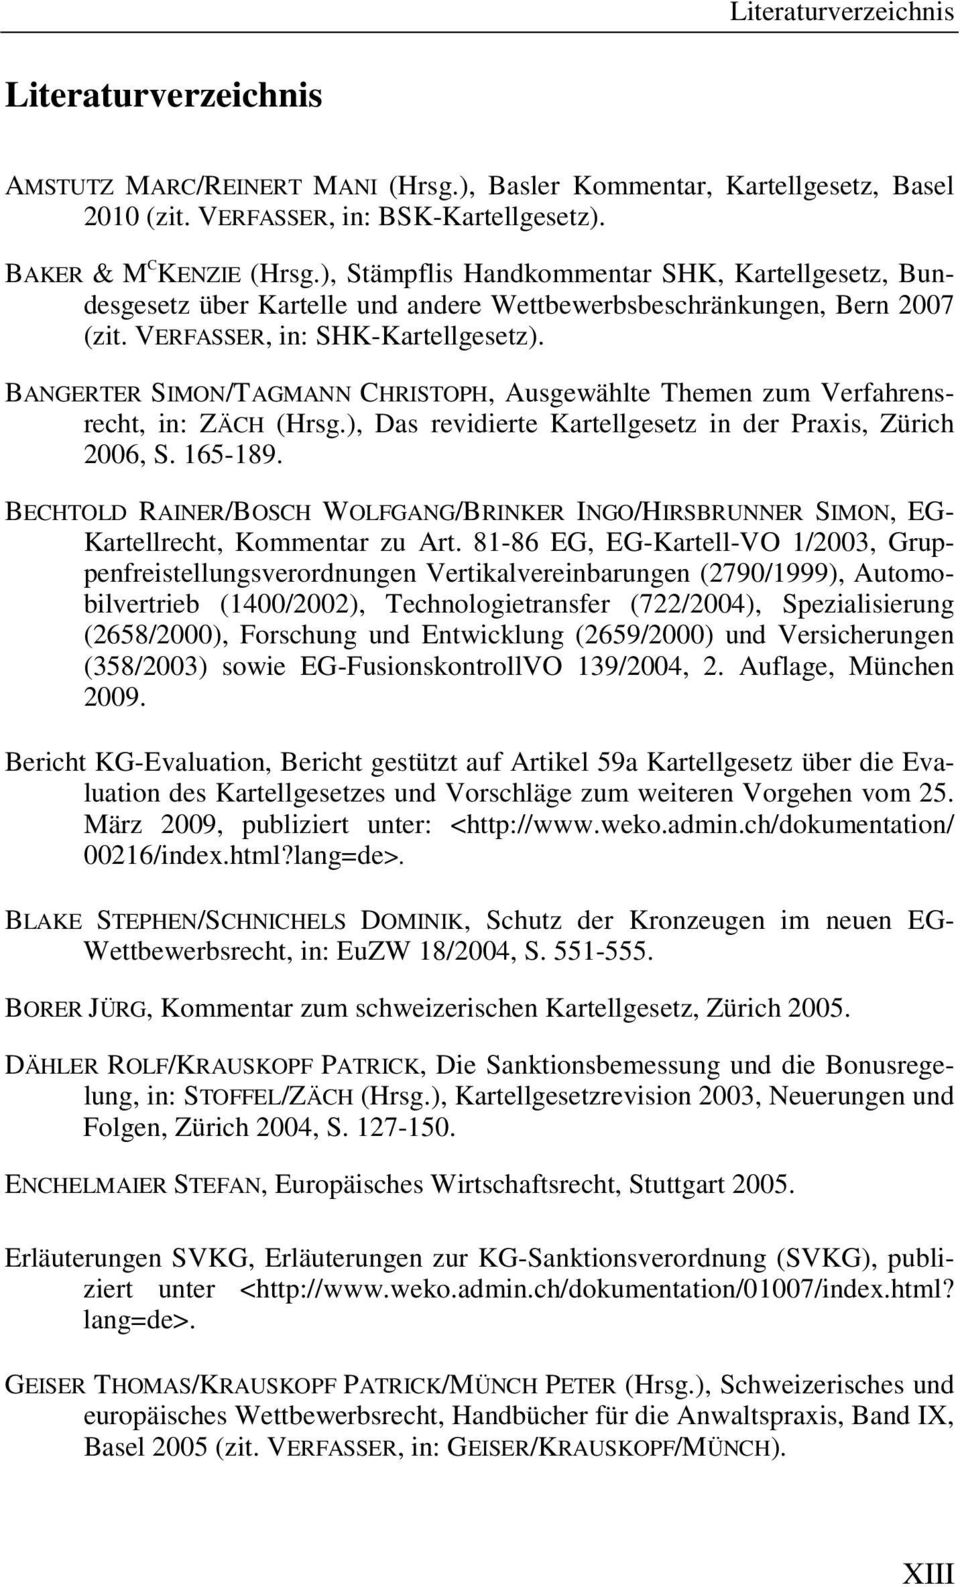 BANGERTER SIMON/TAGMANN CHRISTOPH, Ausgewählte Themen zum Verfahrensrecht, in: ZÄCH (Hrsg.), Das revidierte Kartellgesetz in der Praxis, Zürich 2006, S. 165-189.